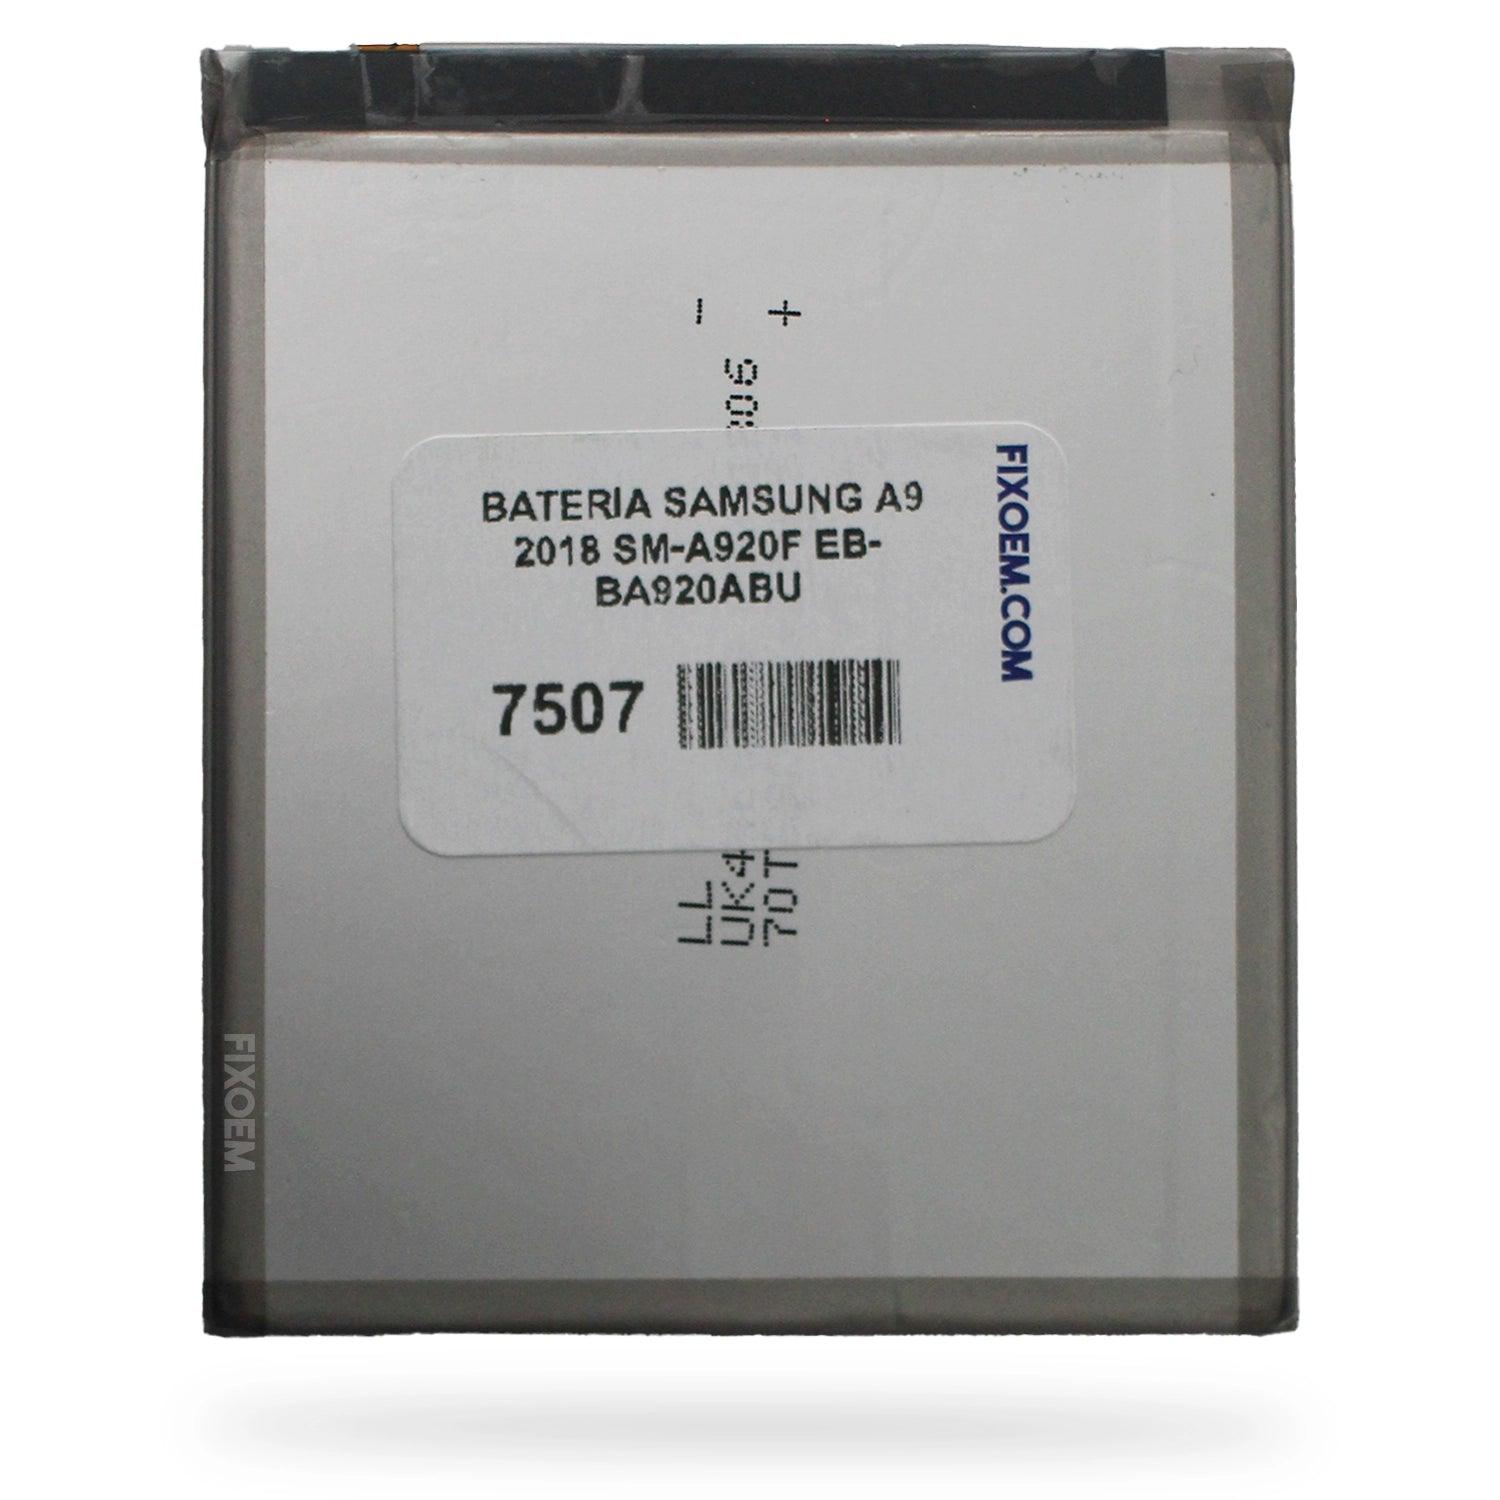 Bateria Samsung A9 2018 Sm-A920F Eb-Ba920Abu a solo $ 150.00 Refaccion y puestos celulares, refurbish y microelectronica.- FixOEM